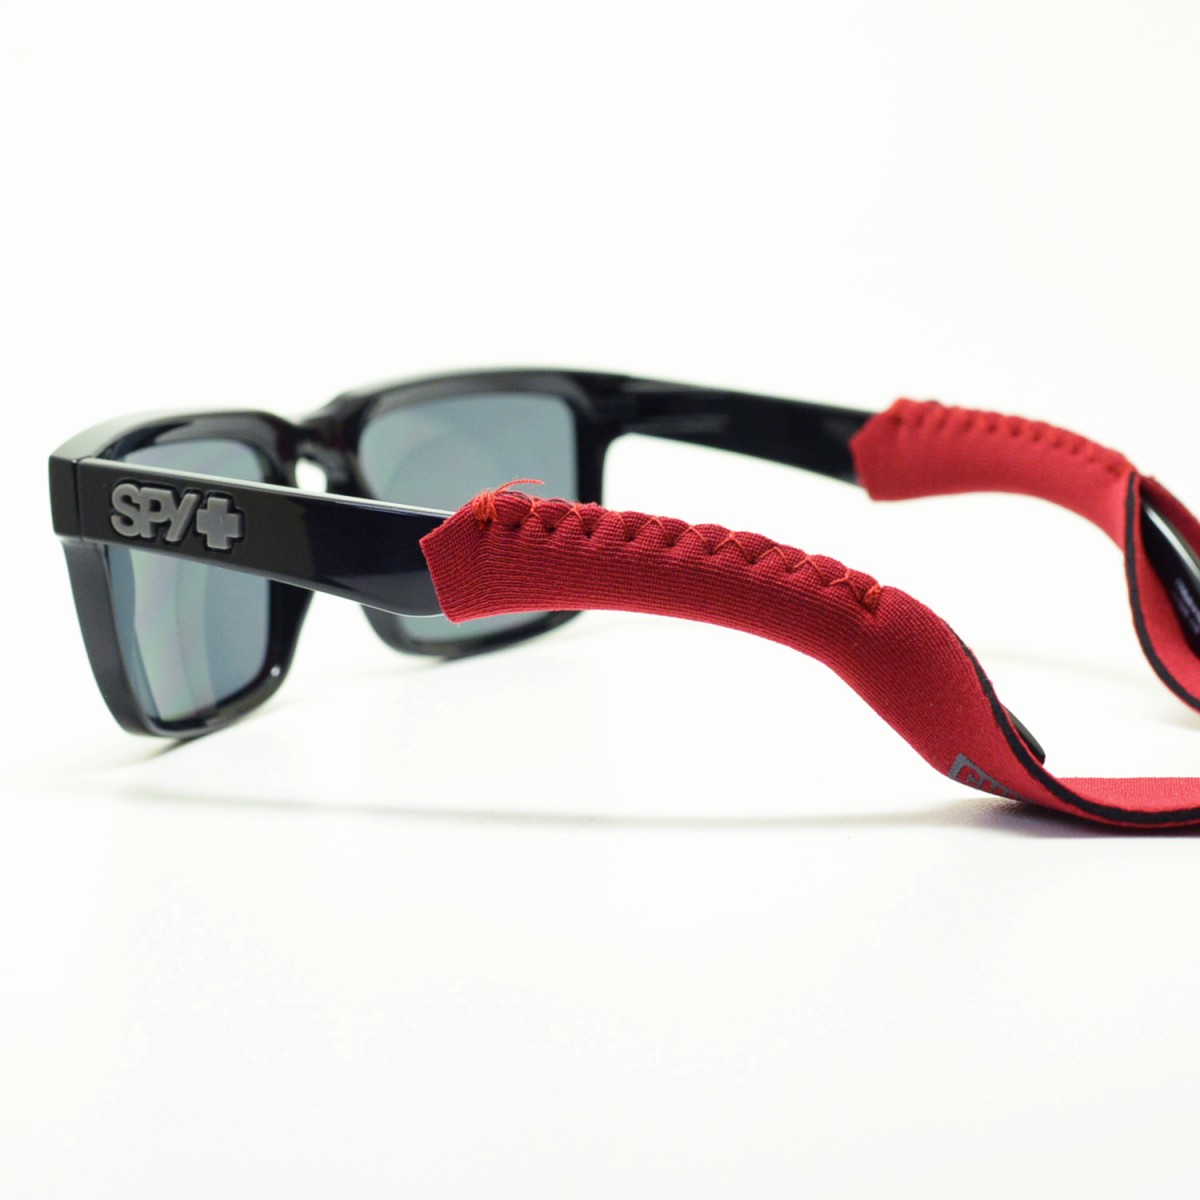 CHUMS チャムス メガネストラップ NEOPRENE-Classic-Solid CH61-0225 ネオプレーン クラシック ソリッド ストラップ  メガネ スポーツメガネ サングラス グラスコード 眼鏡 アウトドア おしゃれ 眼鏡チェーン 眼鏡ストラップ めがねストラップ